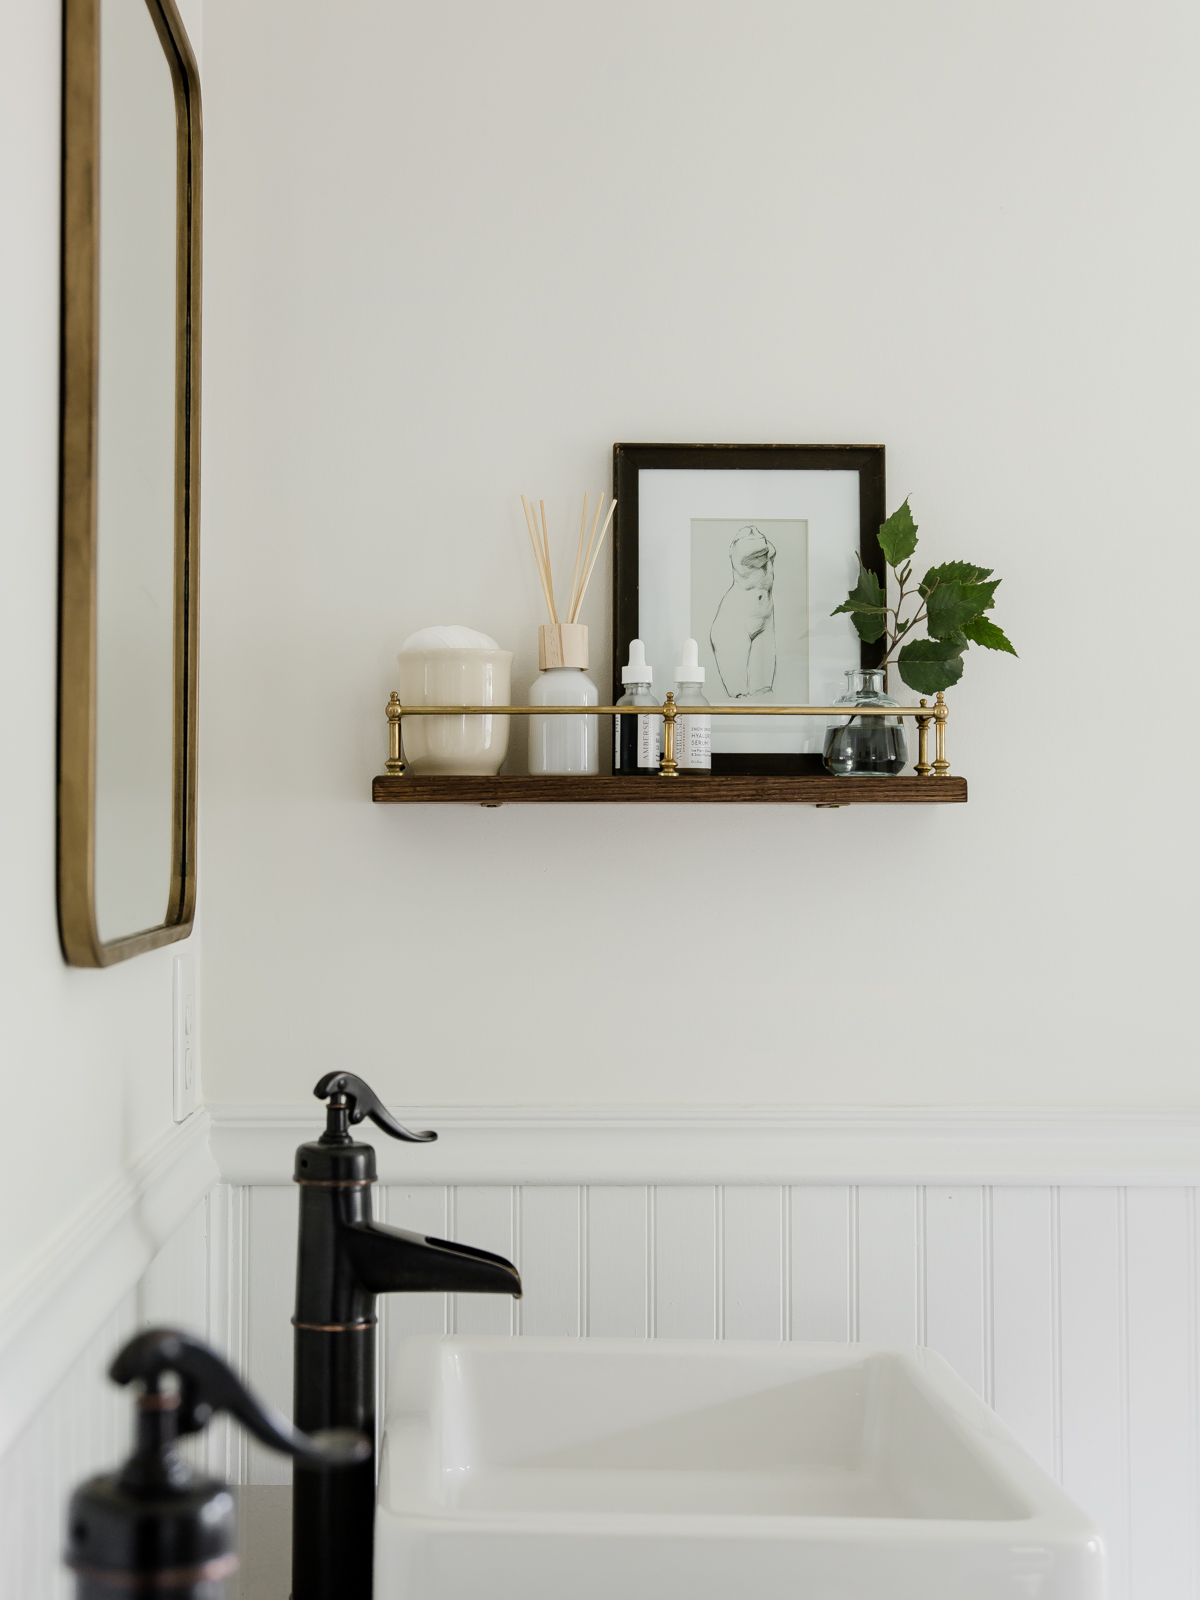 DIY Bathroom Shelf With Brass Gallery Rail